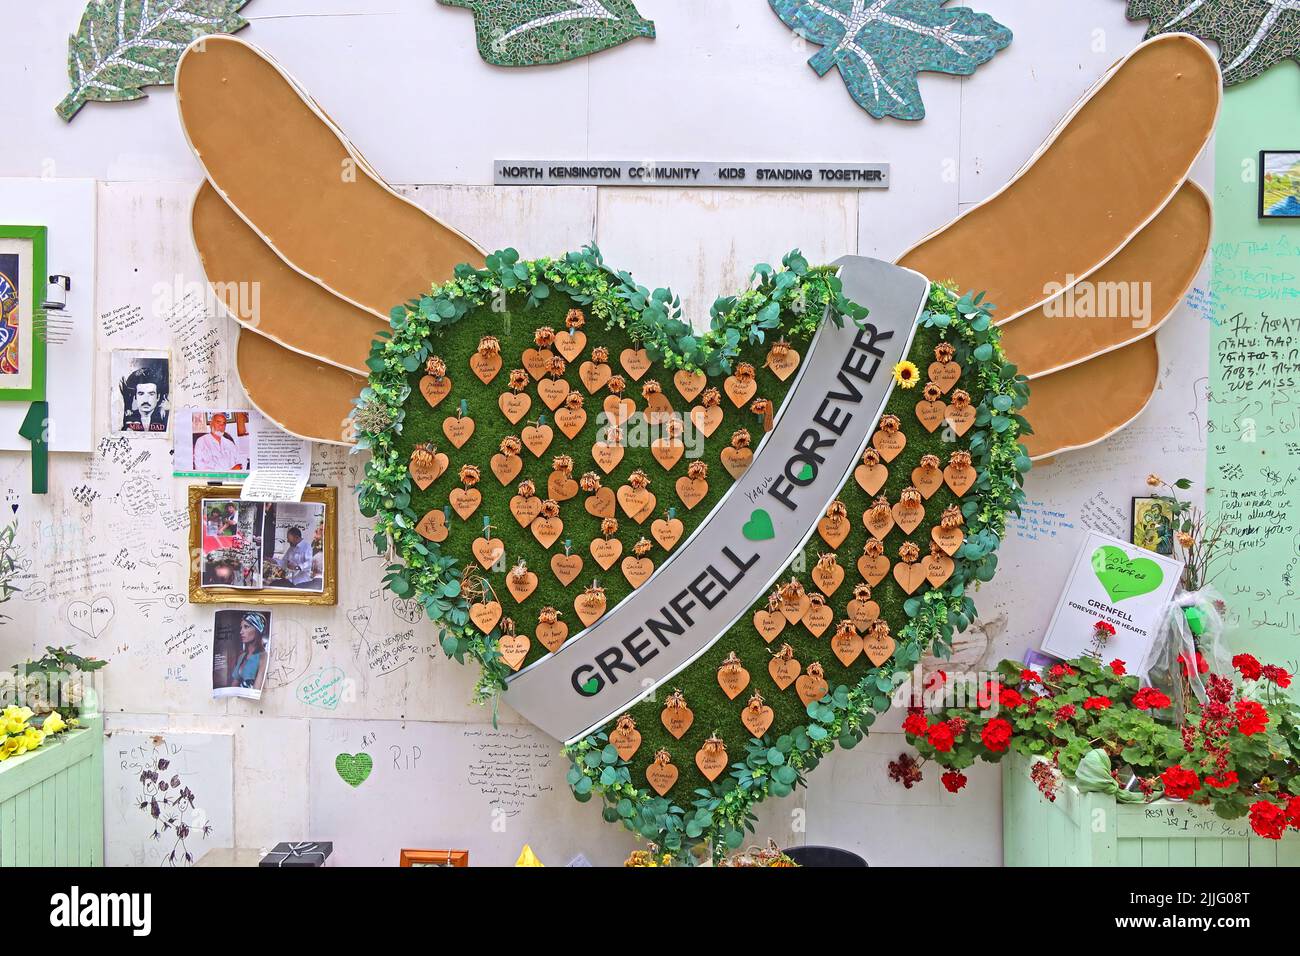 Cœur vert, vert pour le coeur Grenfell, Grenfell pour toujours, rappelez-vous les 72 personnes, North Kensington,Londres,UK - UK bloc de Bardage scandale Banque D'Images